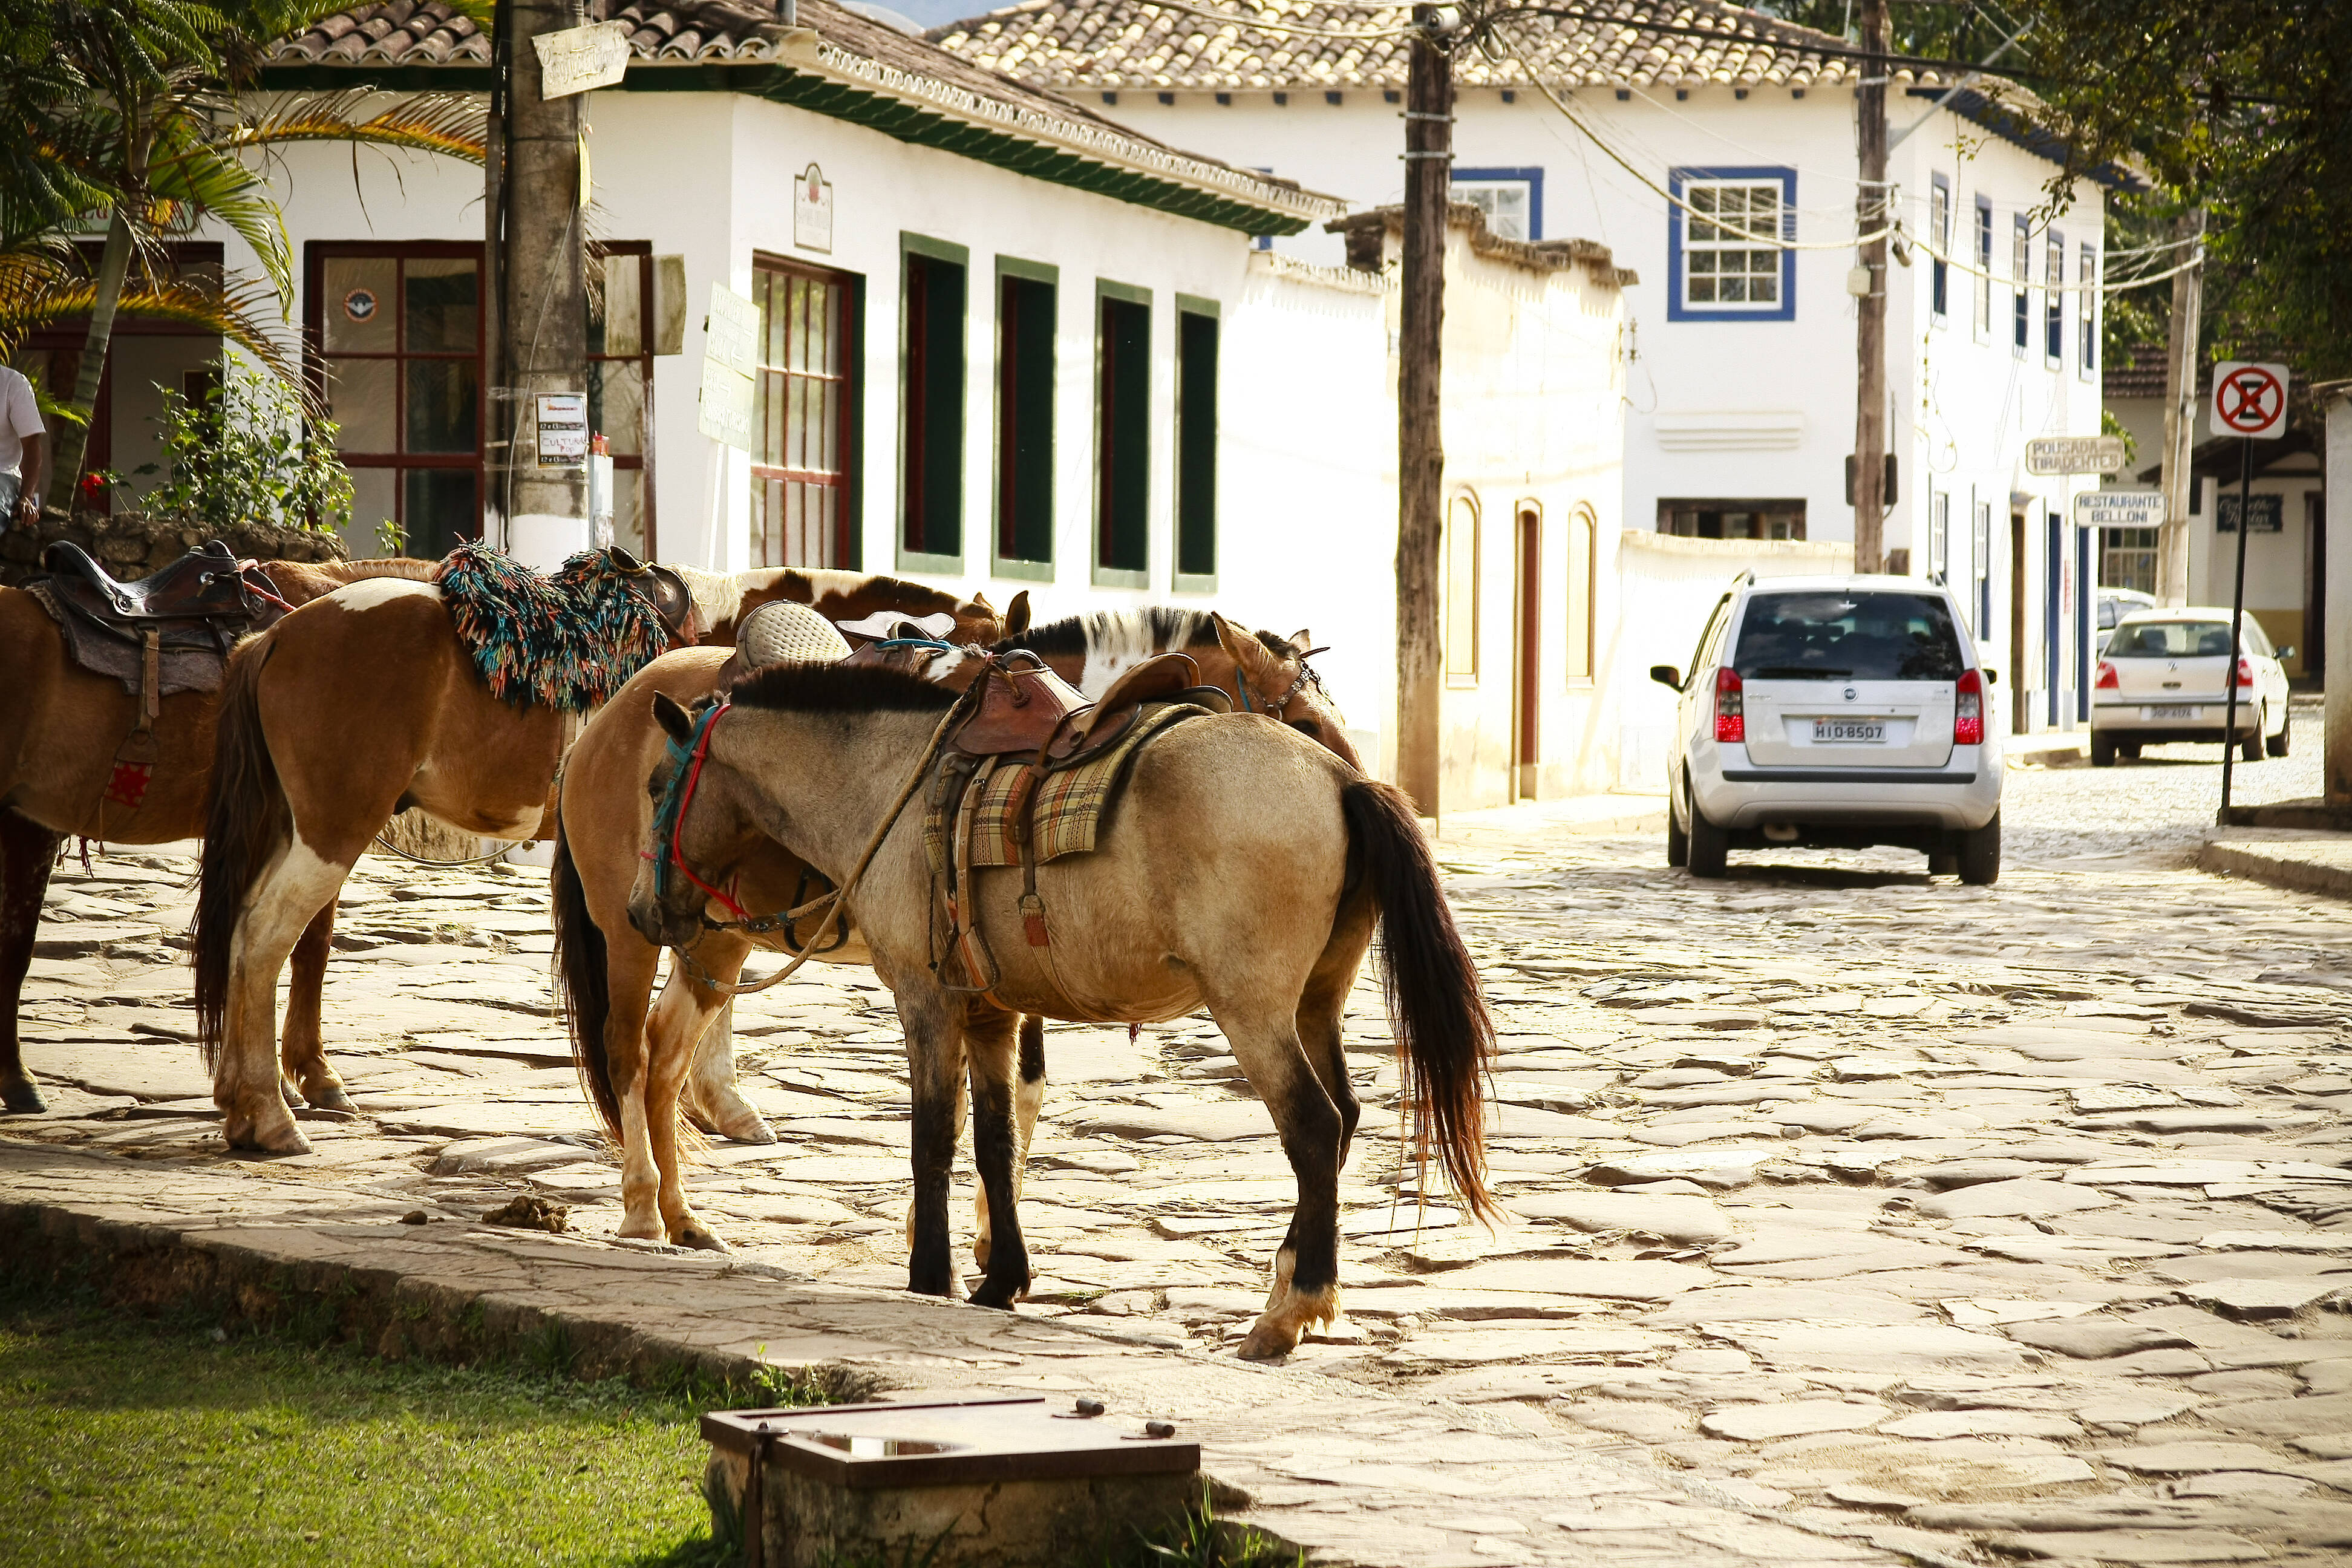 Cavalos na rua são comuns em Tiradentes. Foto: Felipe Carneiro